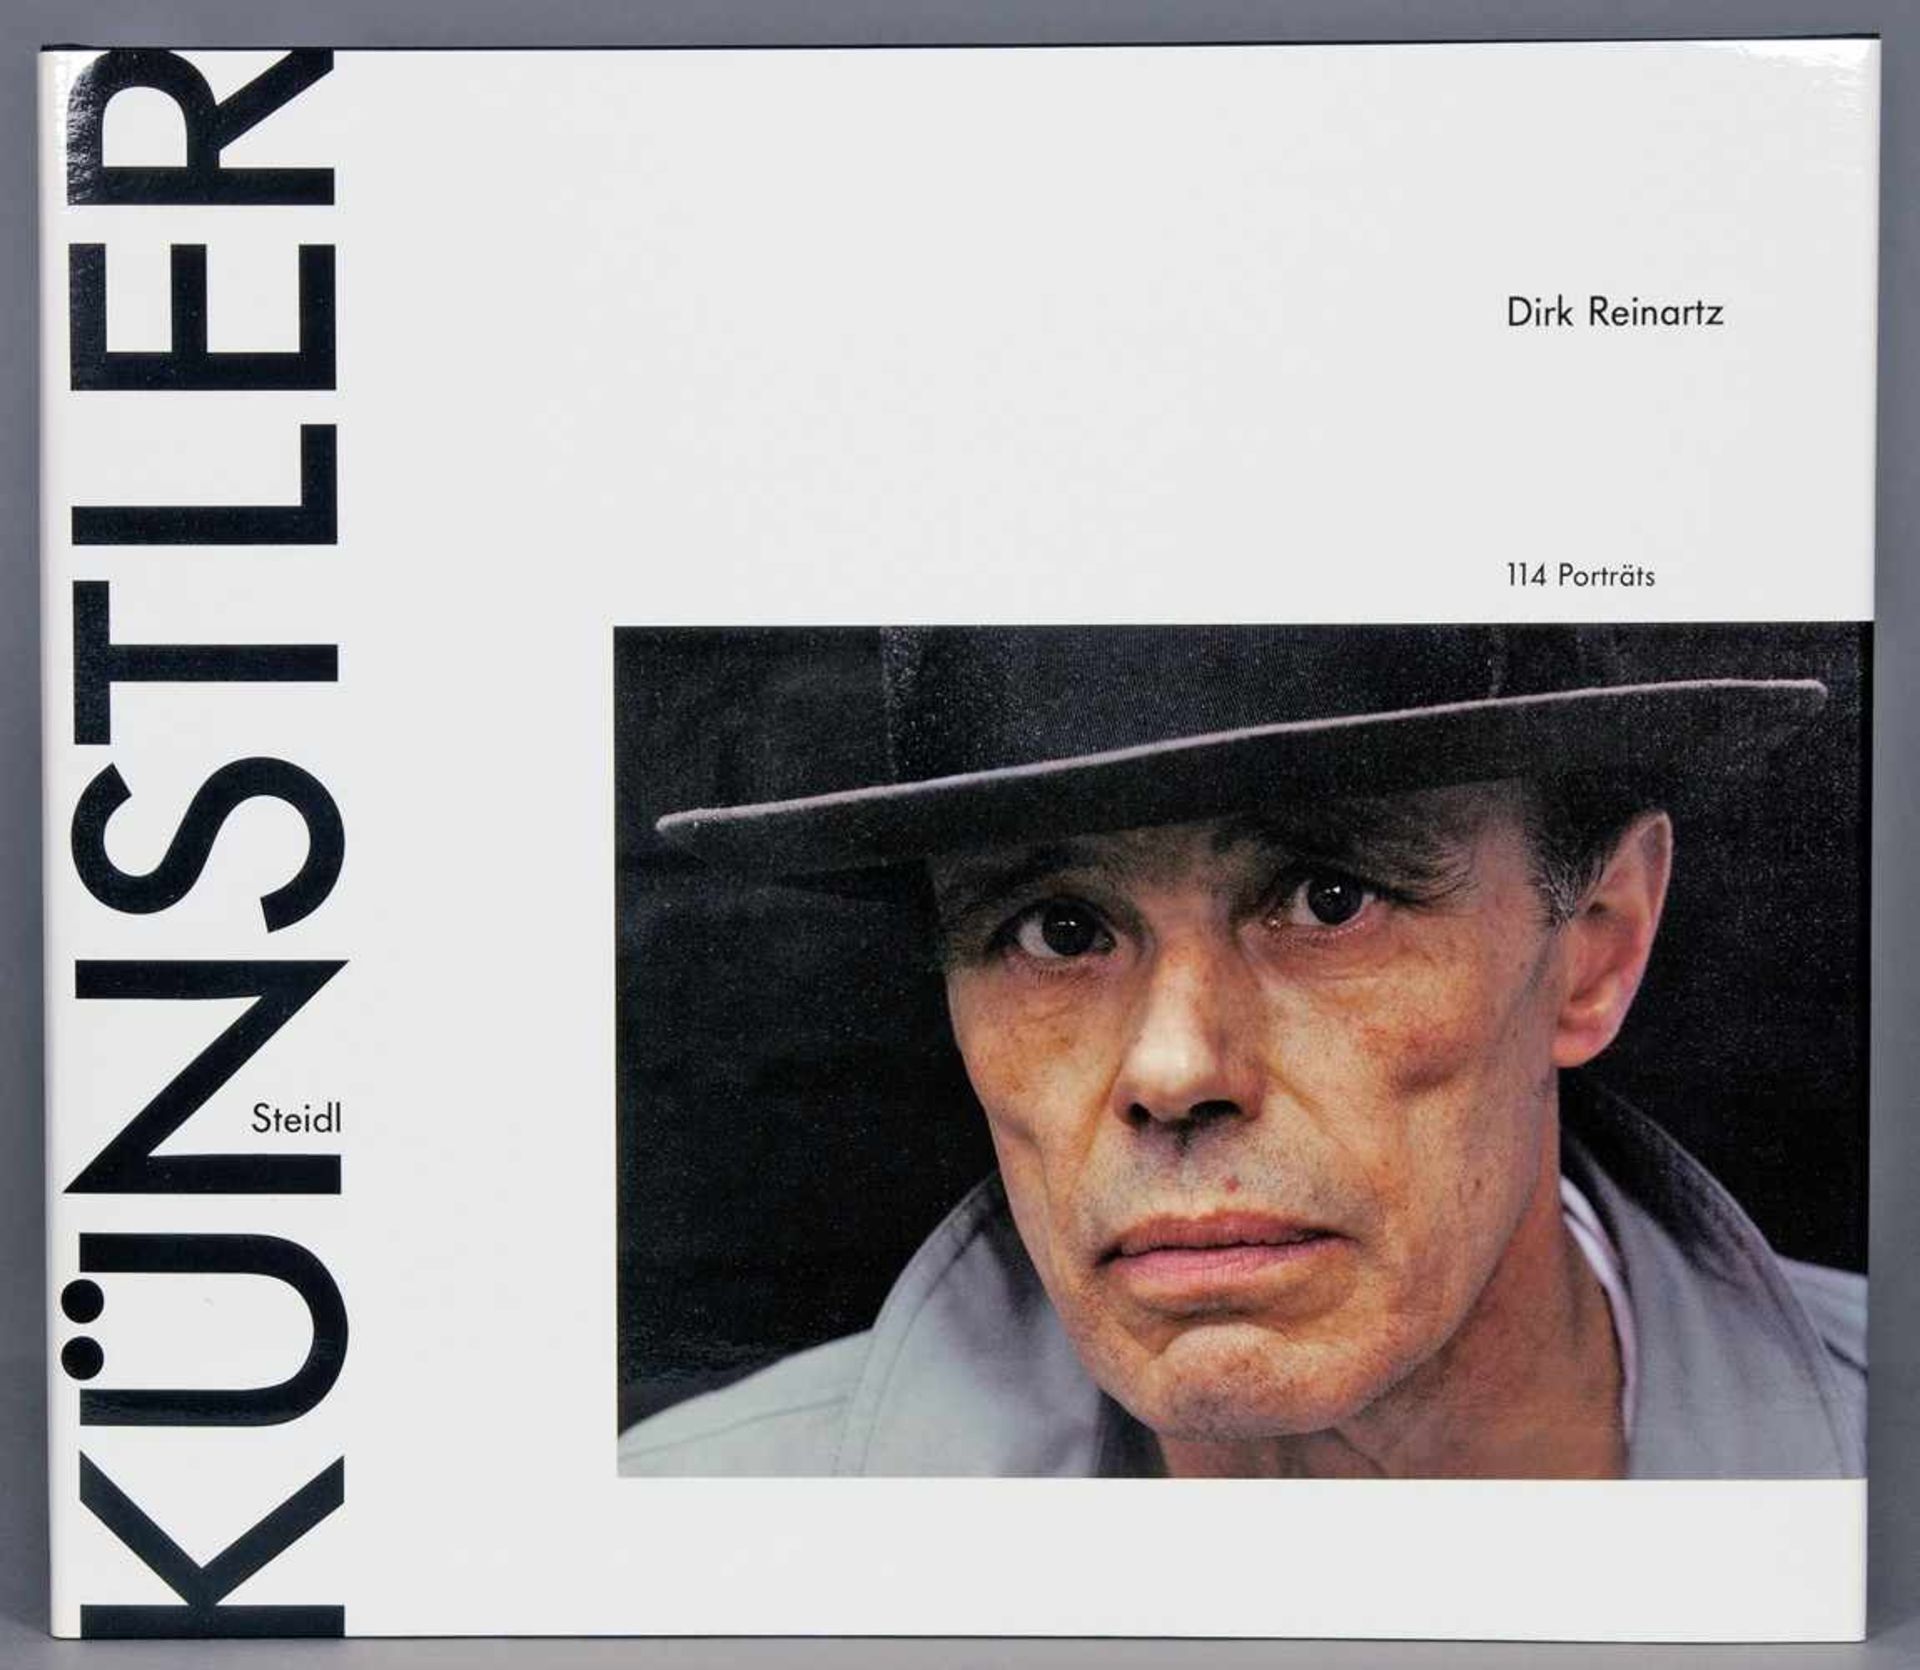 Dirk Reinartz. Künstler. 114 Porträts. Göttingen, Steidl 1992. Mit 114 ganzseitigen